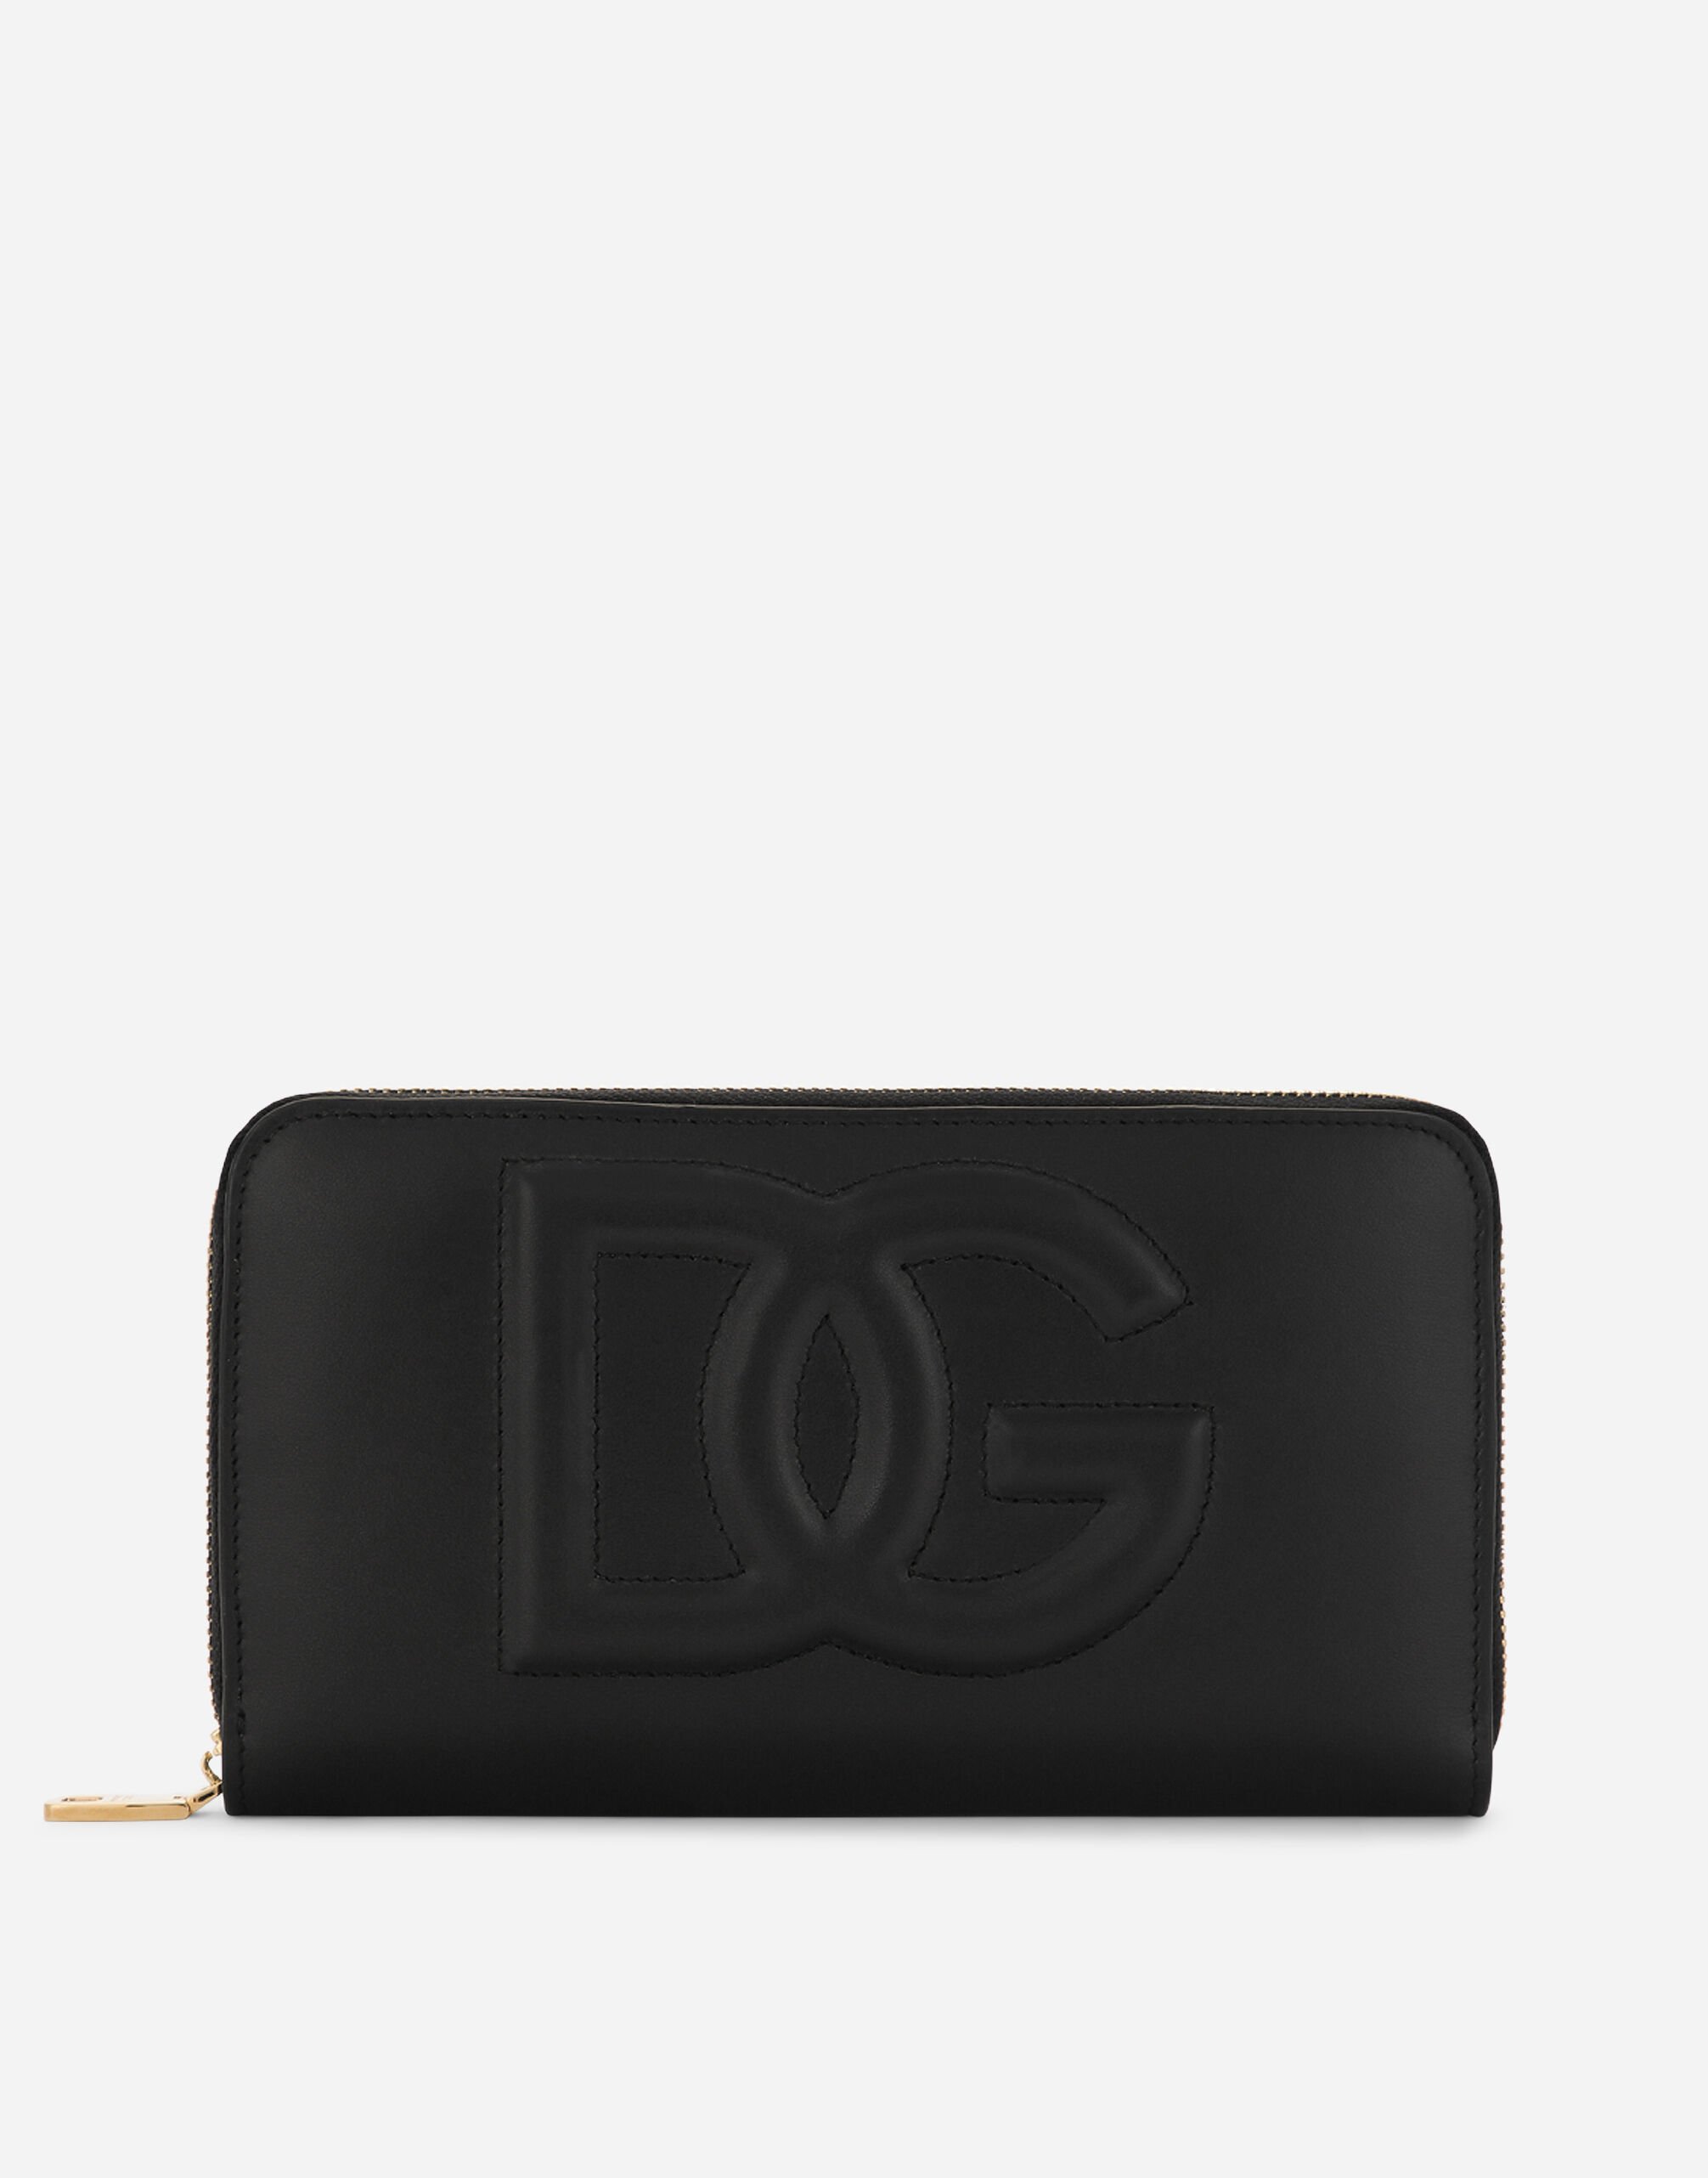 Dolce & Gabbana Calfskin zip-around wallet with DG logo female Black